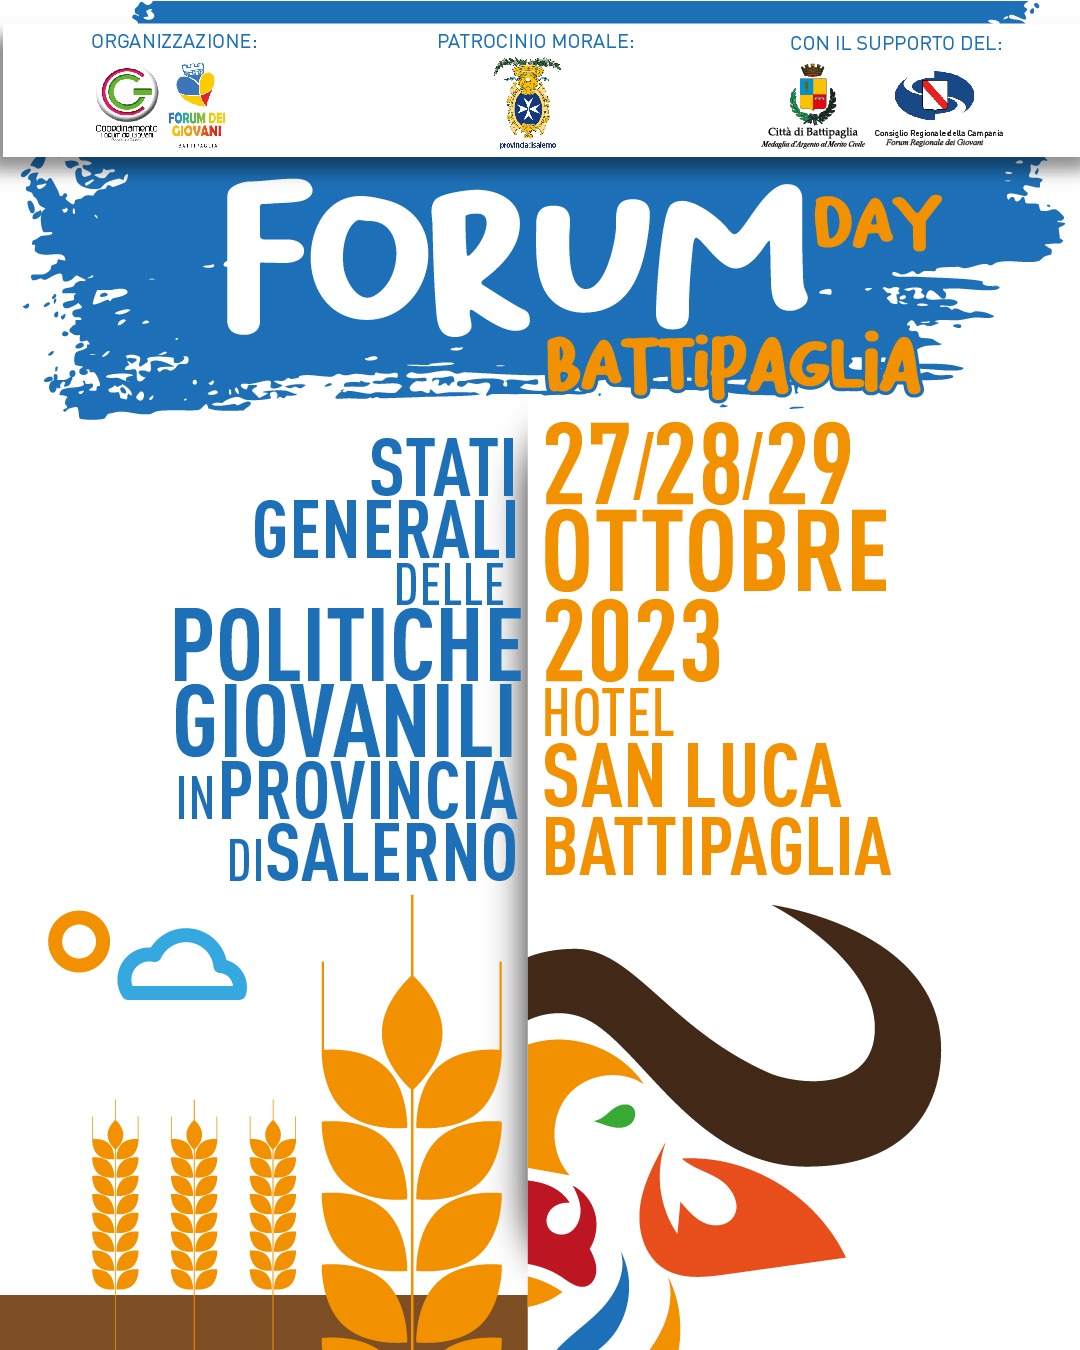 Battipaglia: 2 giorni per “Forum Day-Stati Generali delle Politiche Giovanili in Provincia di Salerno”